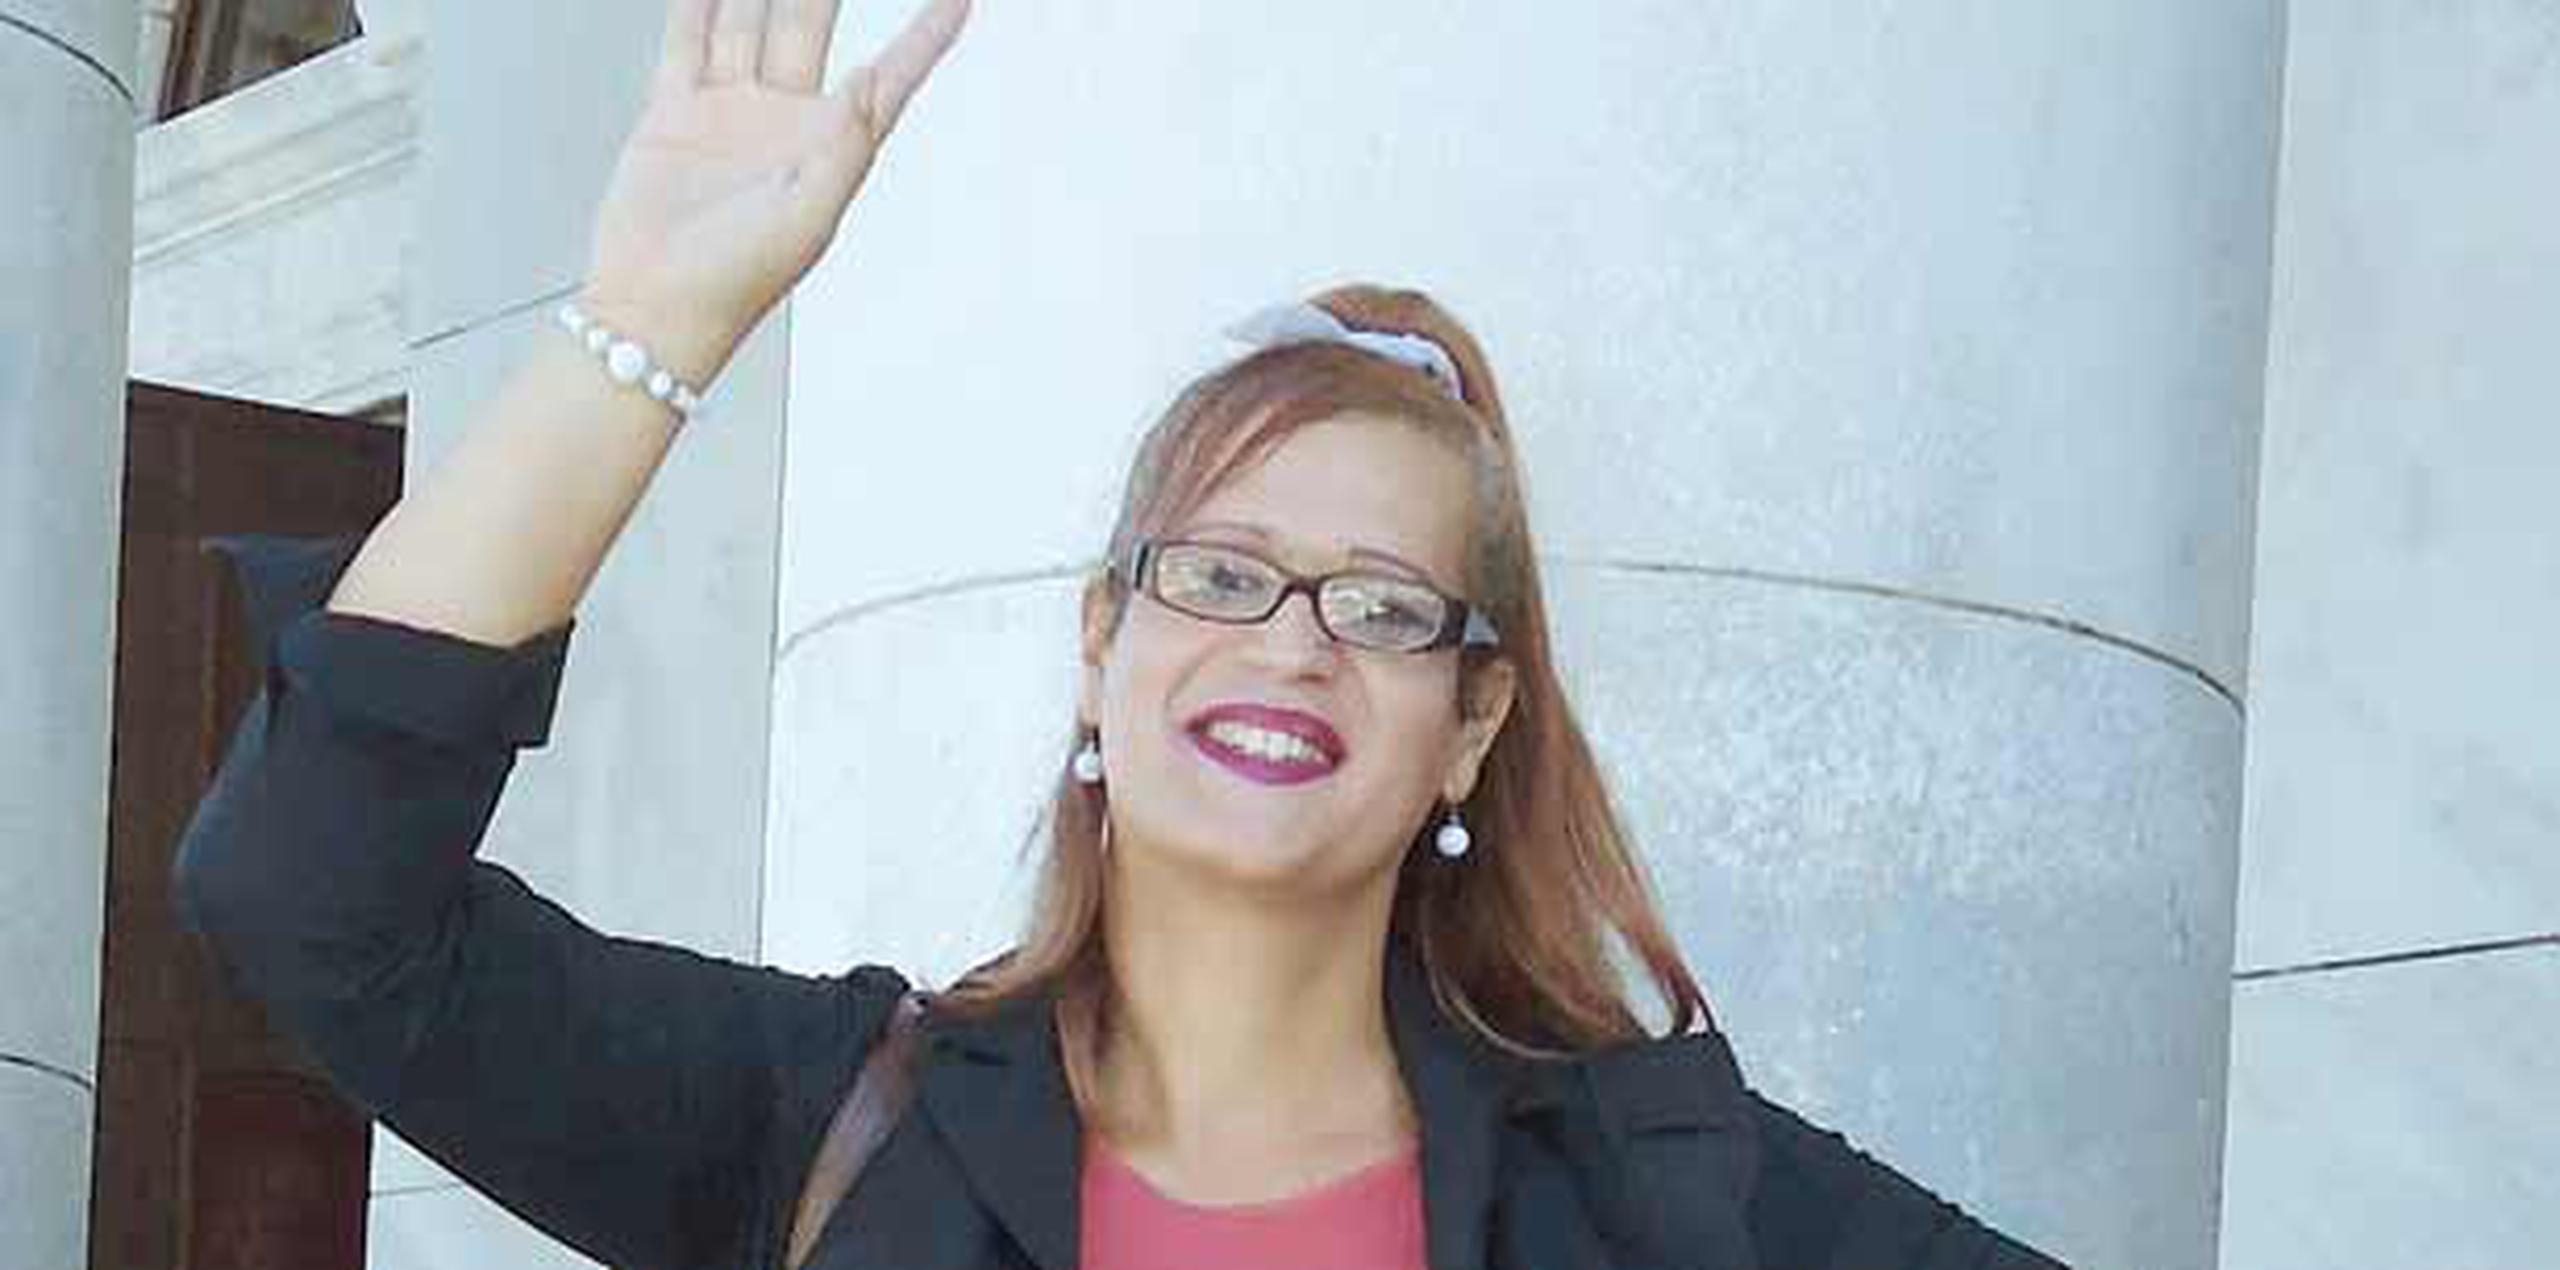 Lisa Marie Rodríguez Rodríguez confía en obtener una tarjeta electoral que refleje su cambio de género y espera que no se violenten sus derechos constitucionales, según expresó a Primera Hora. (Suministrada)